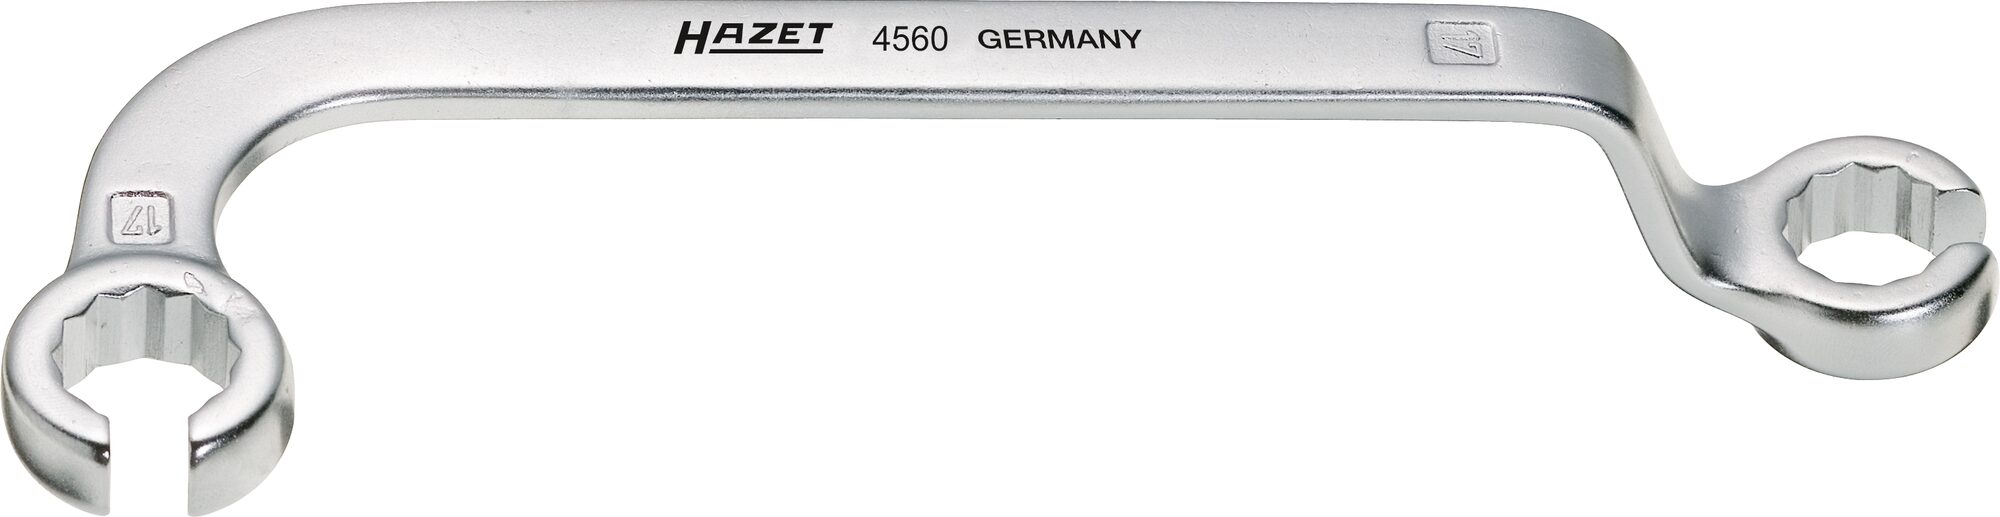 HAZET Einspritzleitungs-Schlüssel 4560 · Außen Doppel-Sechskant Profil · 17 x 17 mm